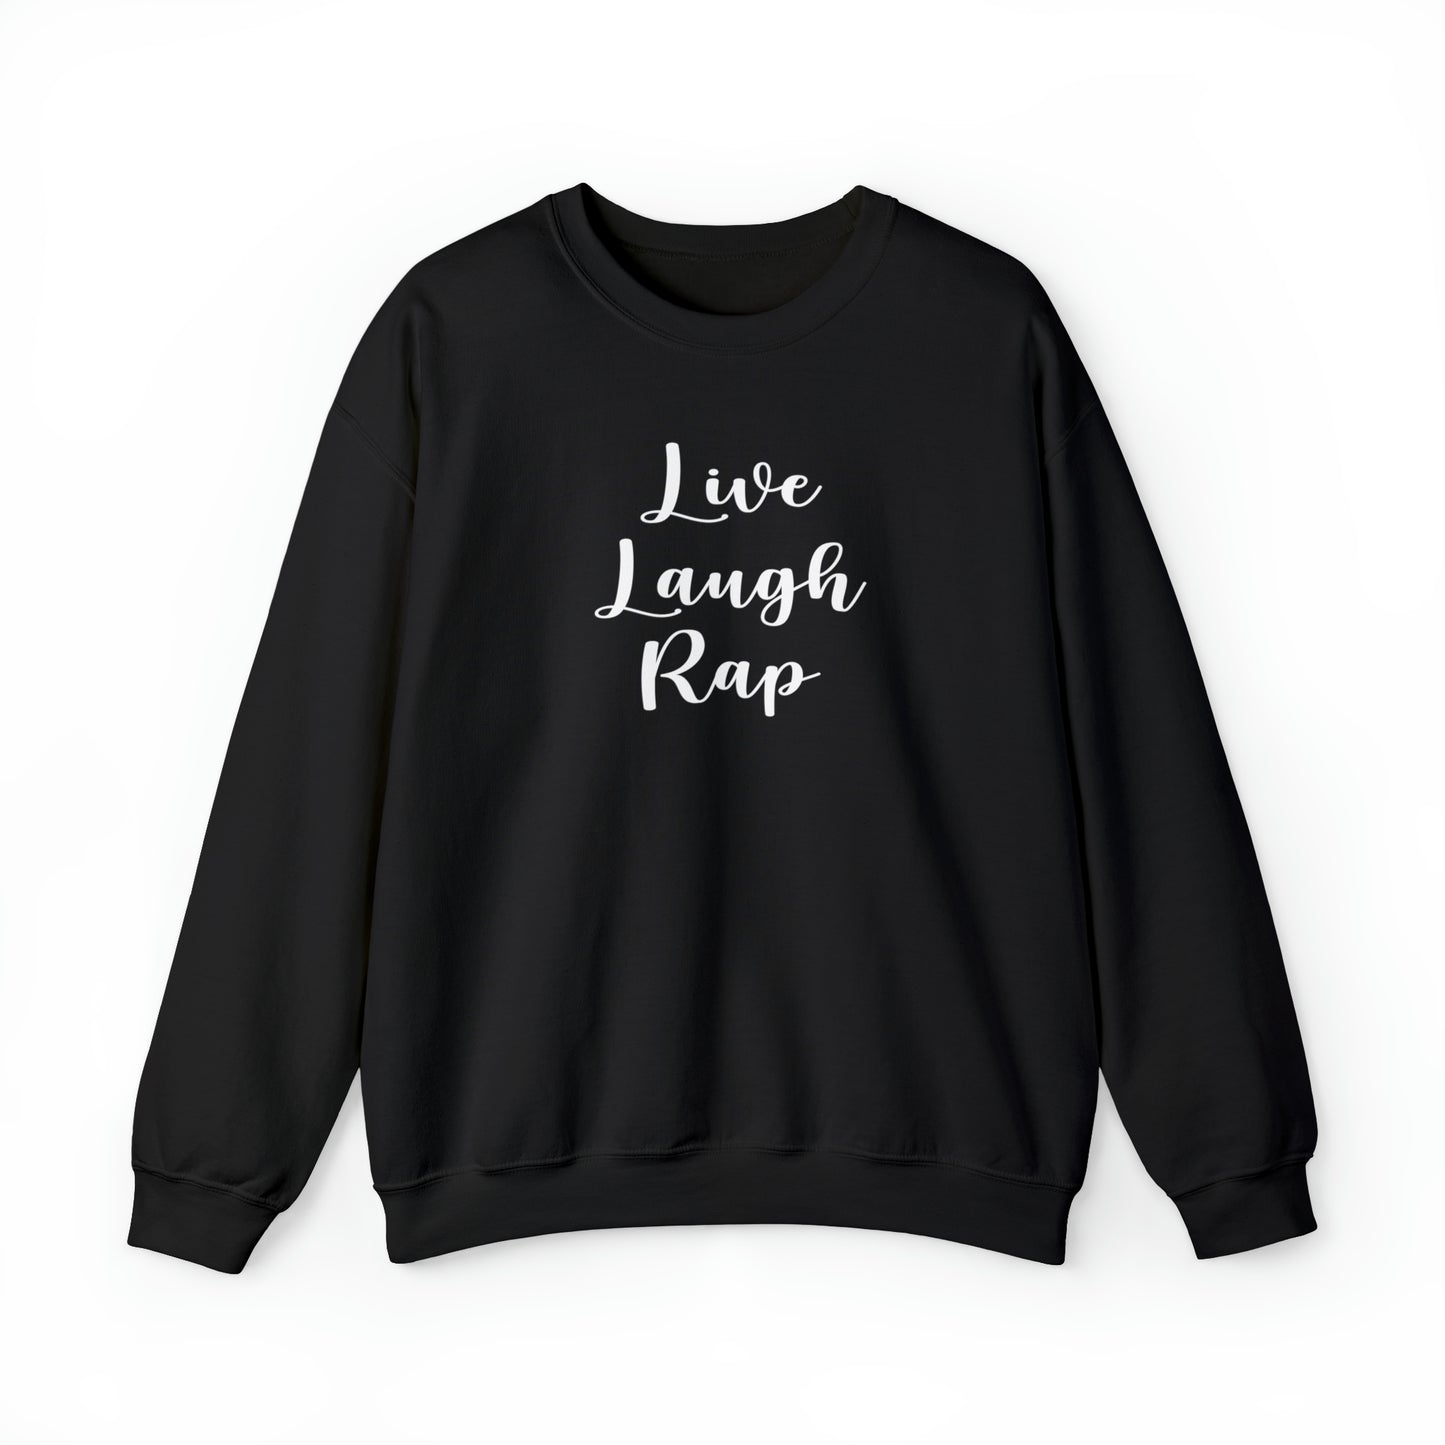 Live Laugh Rap Hip-Hop Crewneck Sweatshirt for Rap & Hip-Hop Lover, Rap Crewneck